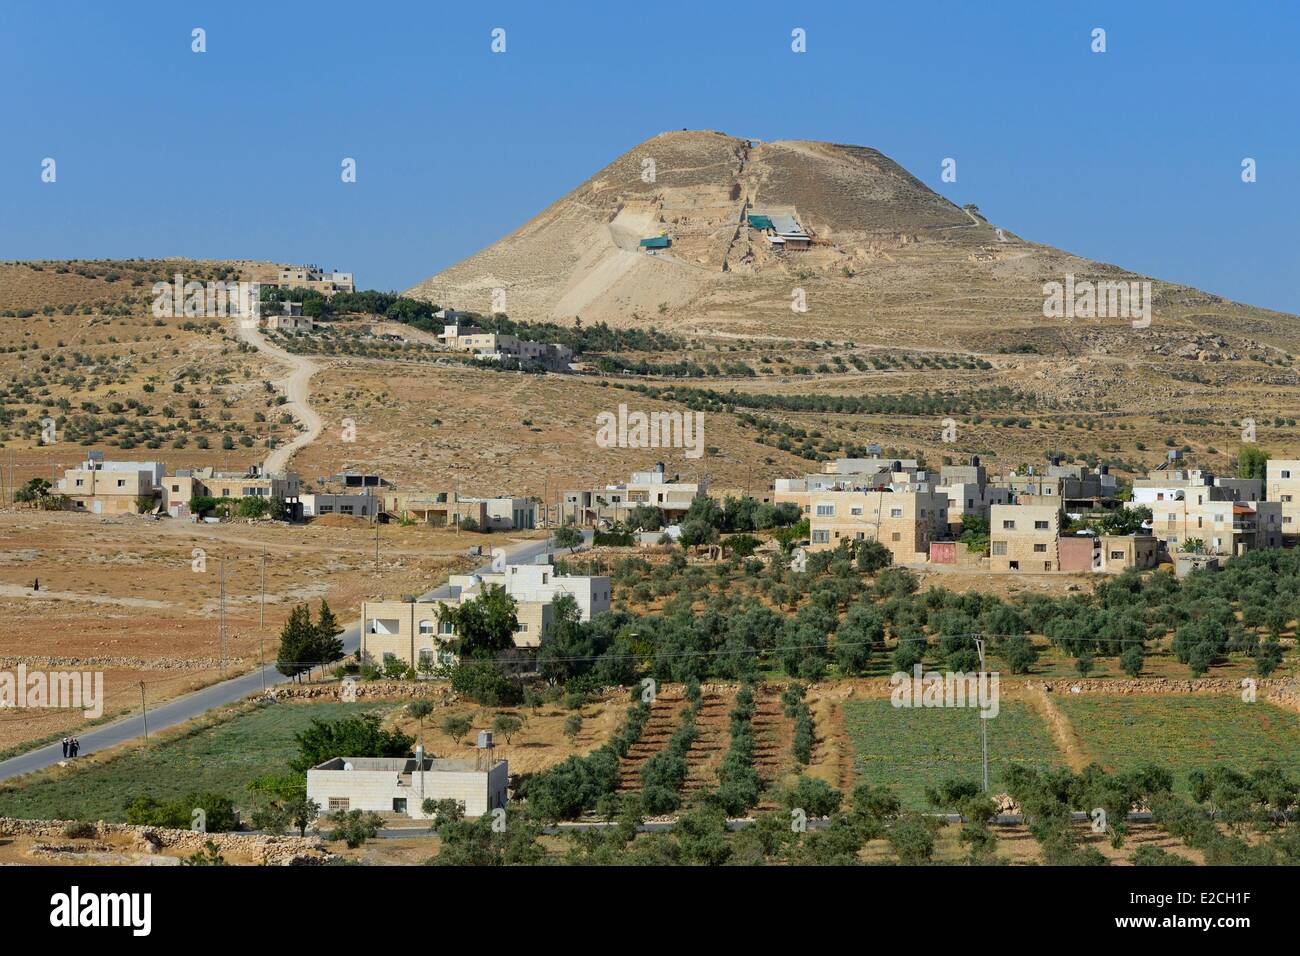 Palestina, West Bank (contestato territorio), Herodium o Herodion è un vulcano-come la collina con un tronco di cono con una fortezza e palazzo costruito da Erode il Grande (Herodion Parco Nazionale) Foto Stock